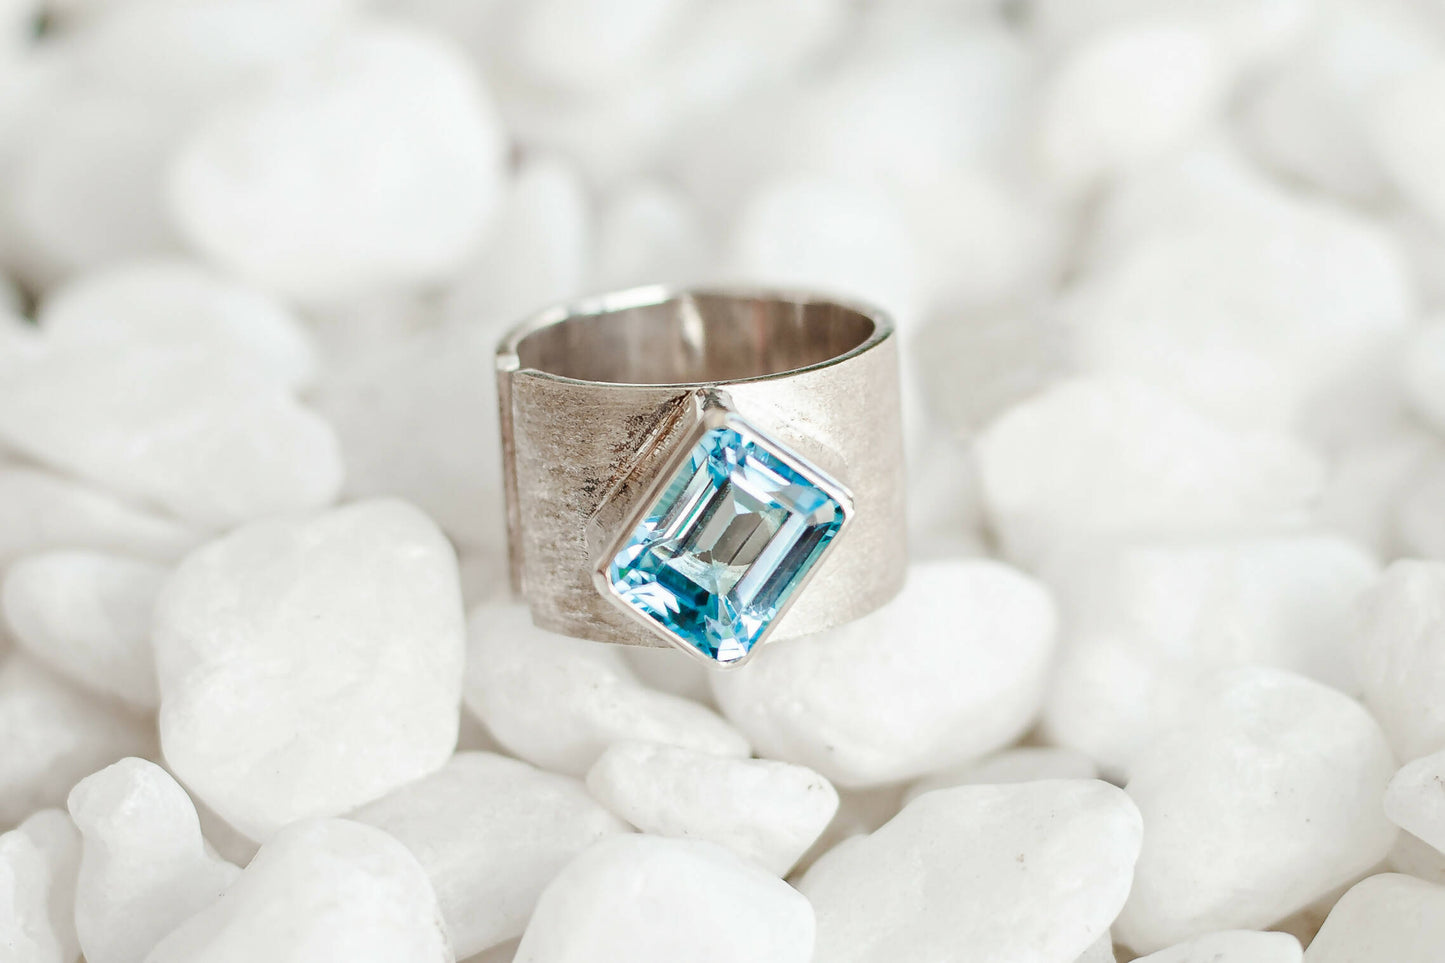 Natural Blue Topaz Ring, Handmade Silver, Round Blue Topaz Ring, Gift for her, December Birthstone, Light Blue Gemstone, Promise Ring